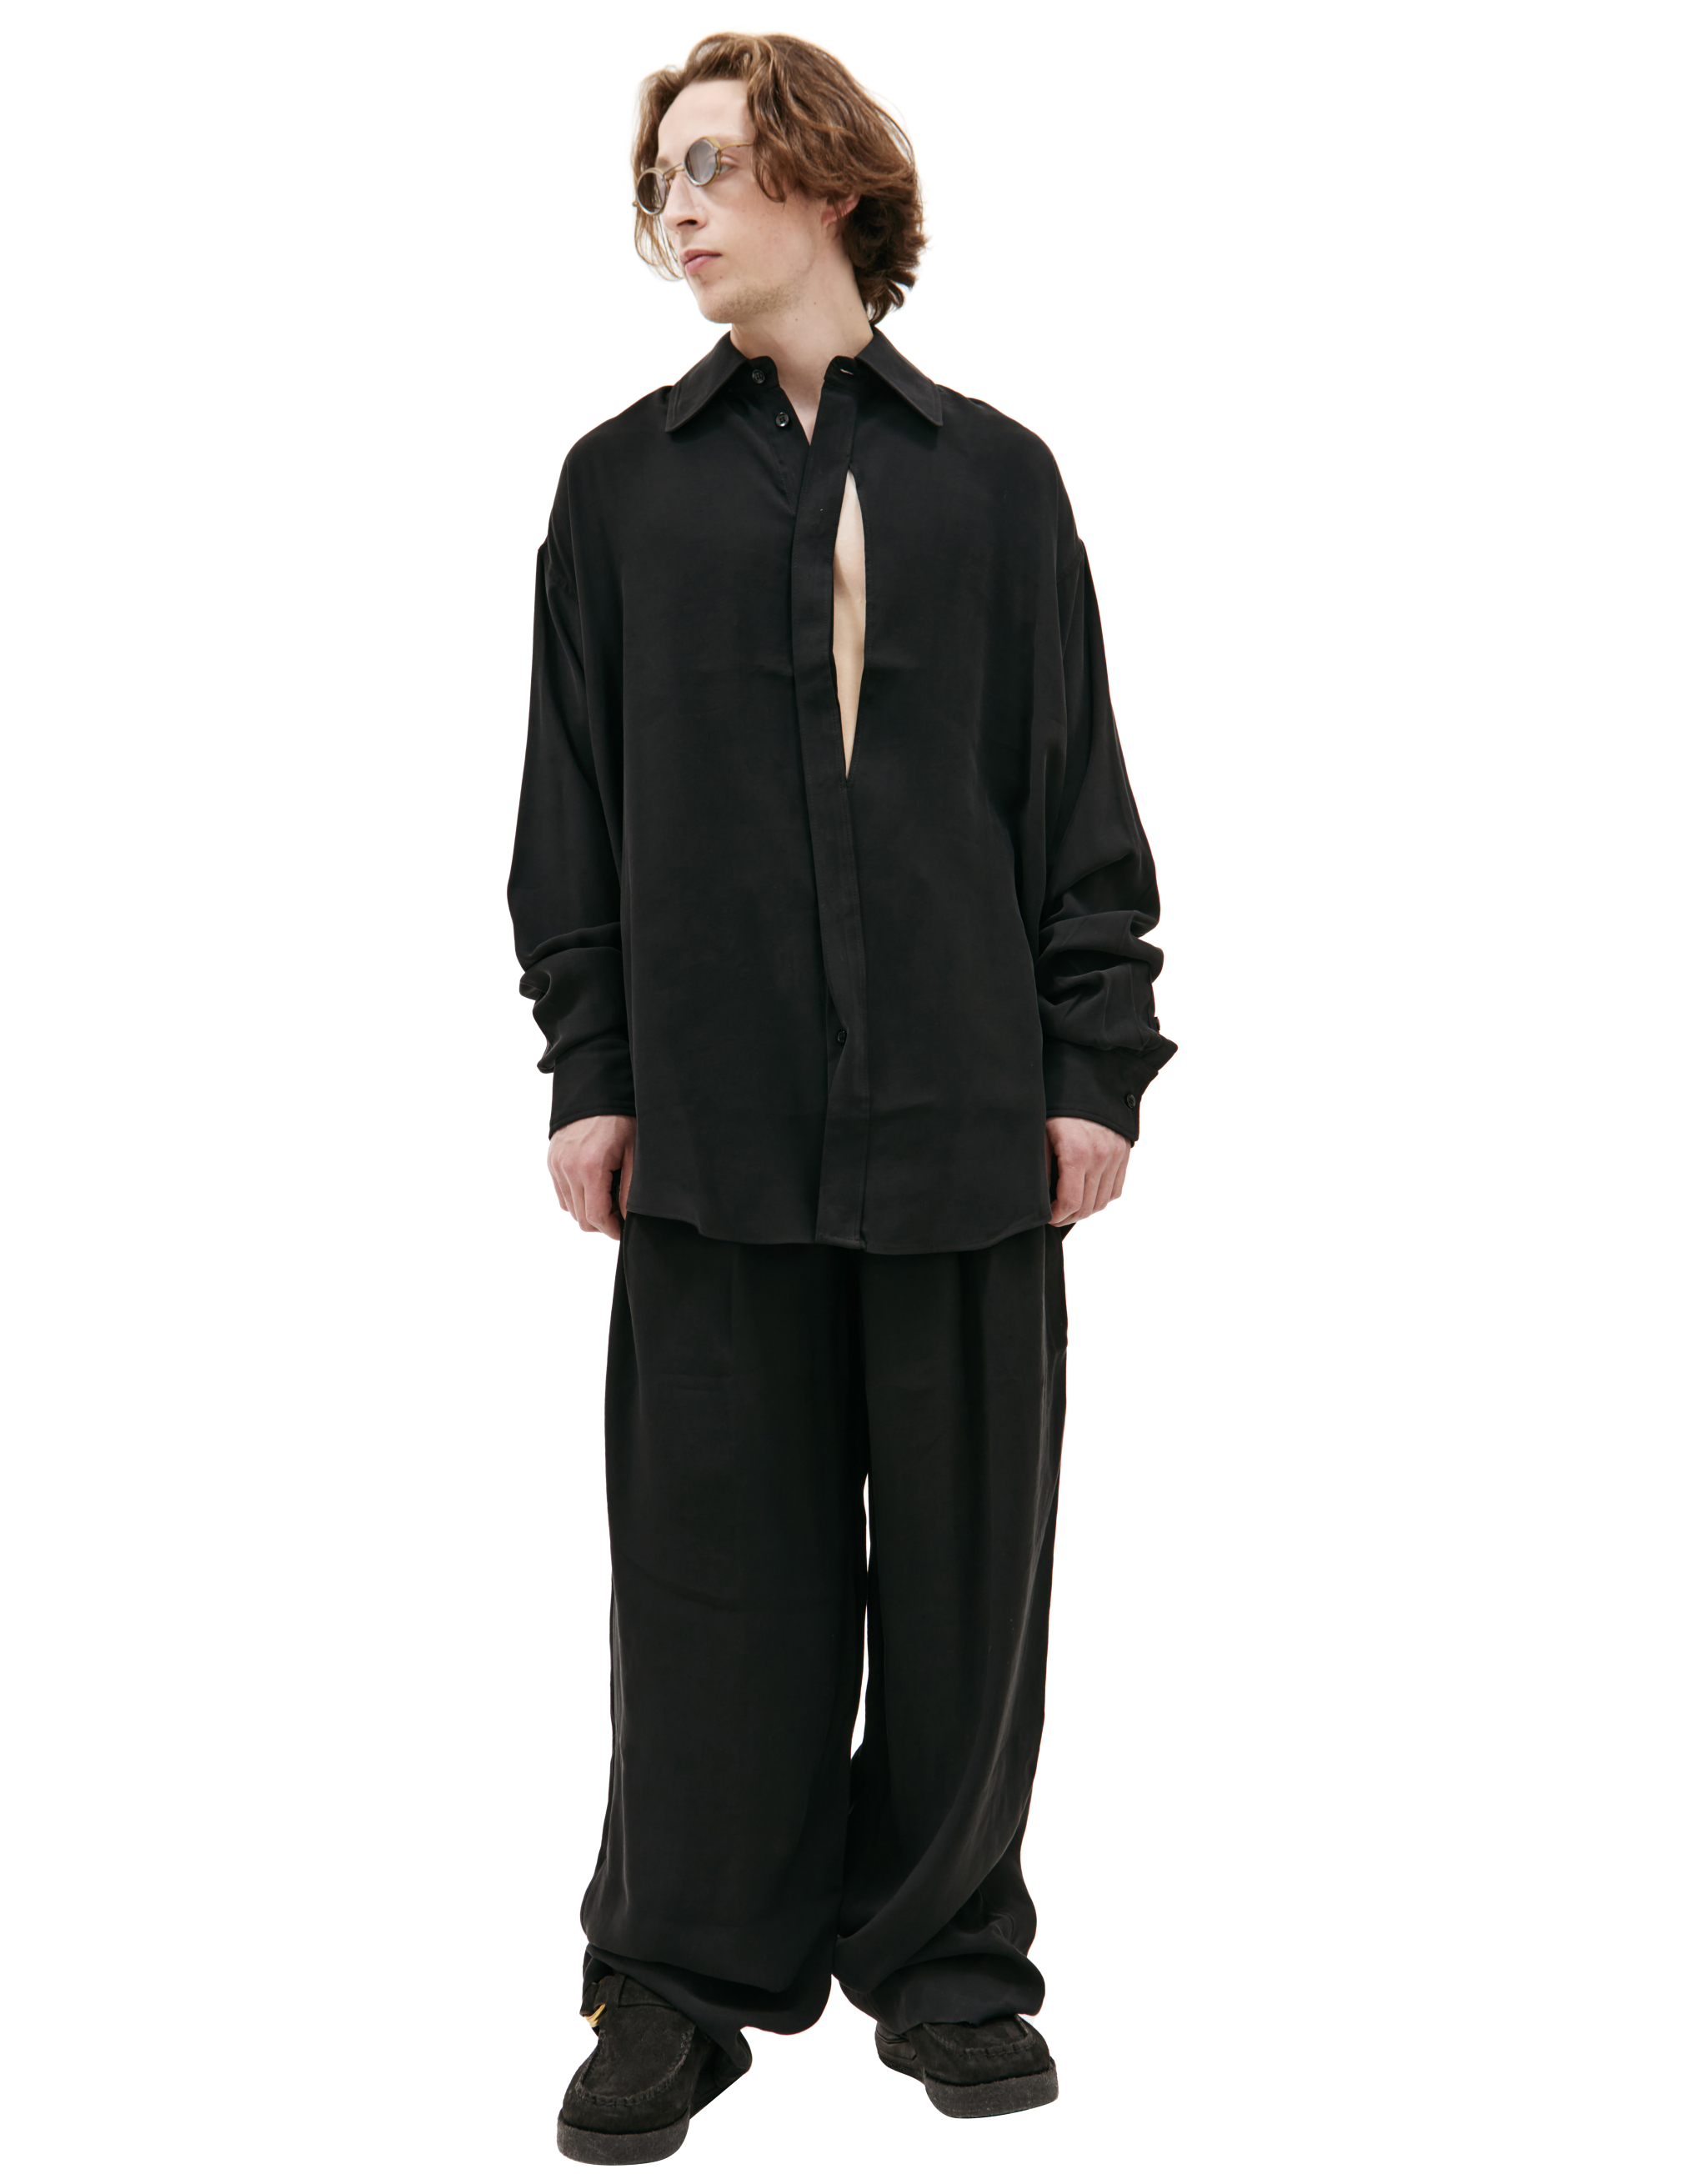 Черная рубашка с асимметричным вырезом LOUIS GABRIEL NOUCHI 0550/T600/001, размер M;XL